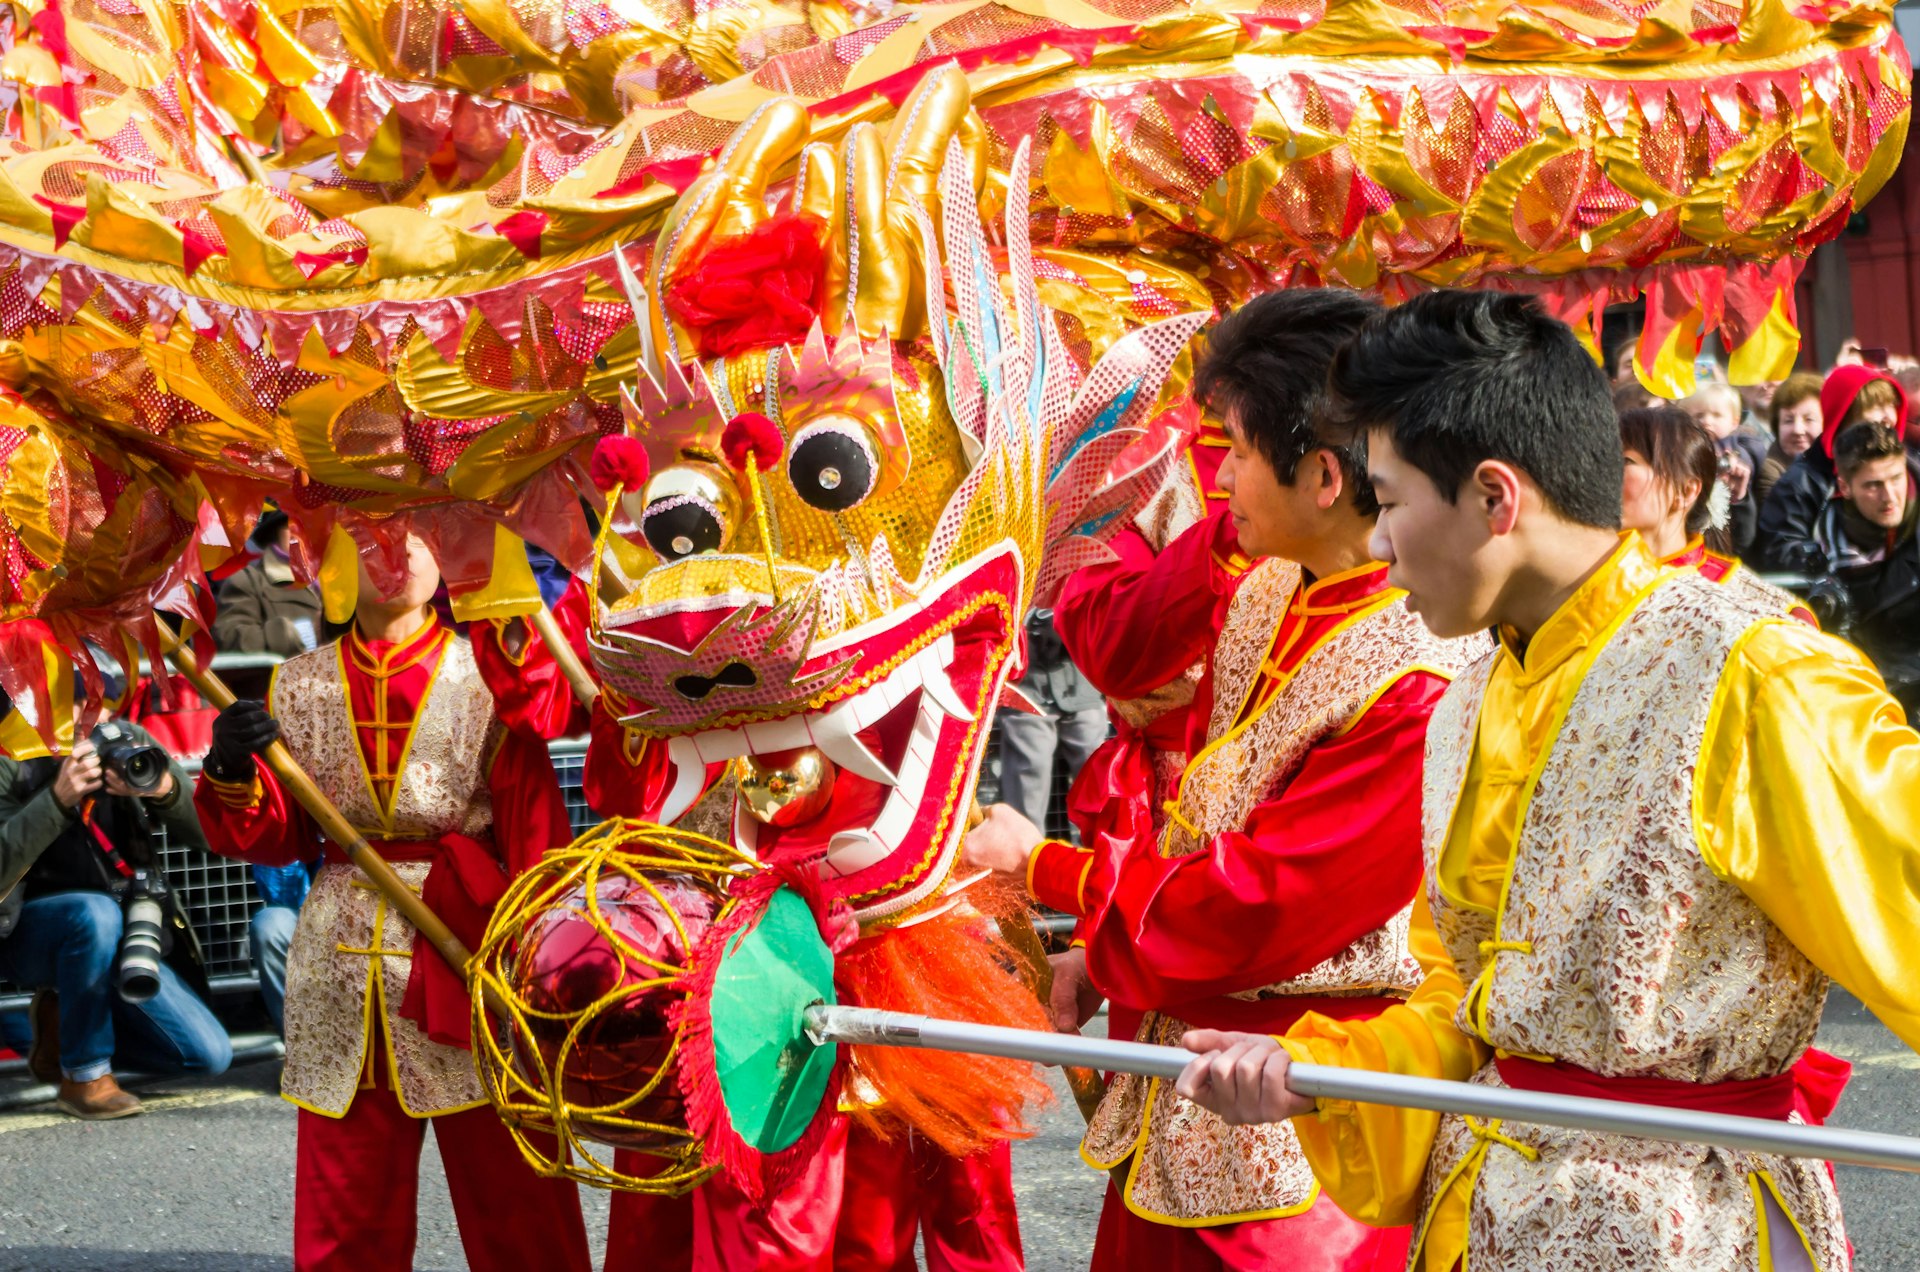 Золото-красный дракон на улицах в окружении людей, одетых в традиционную китайскую одежду.